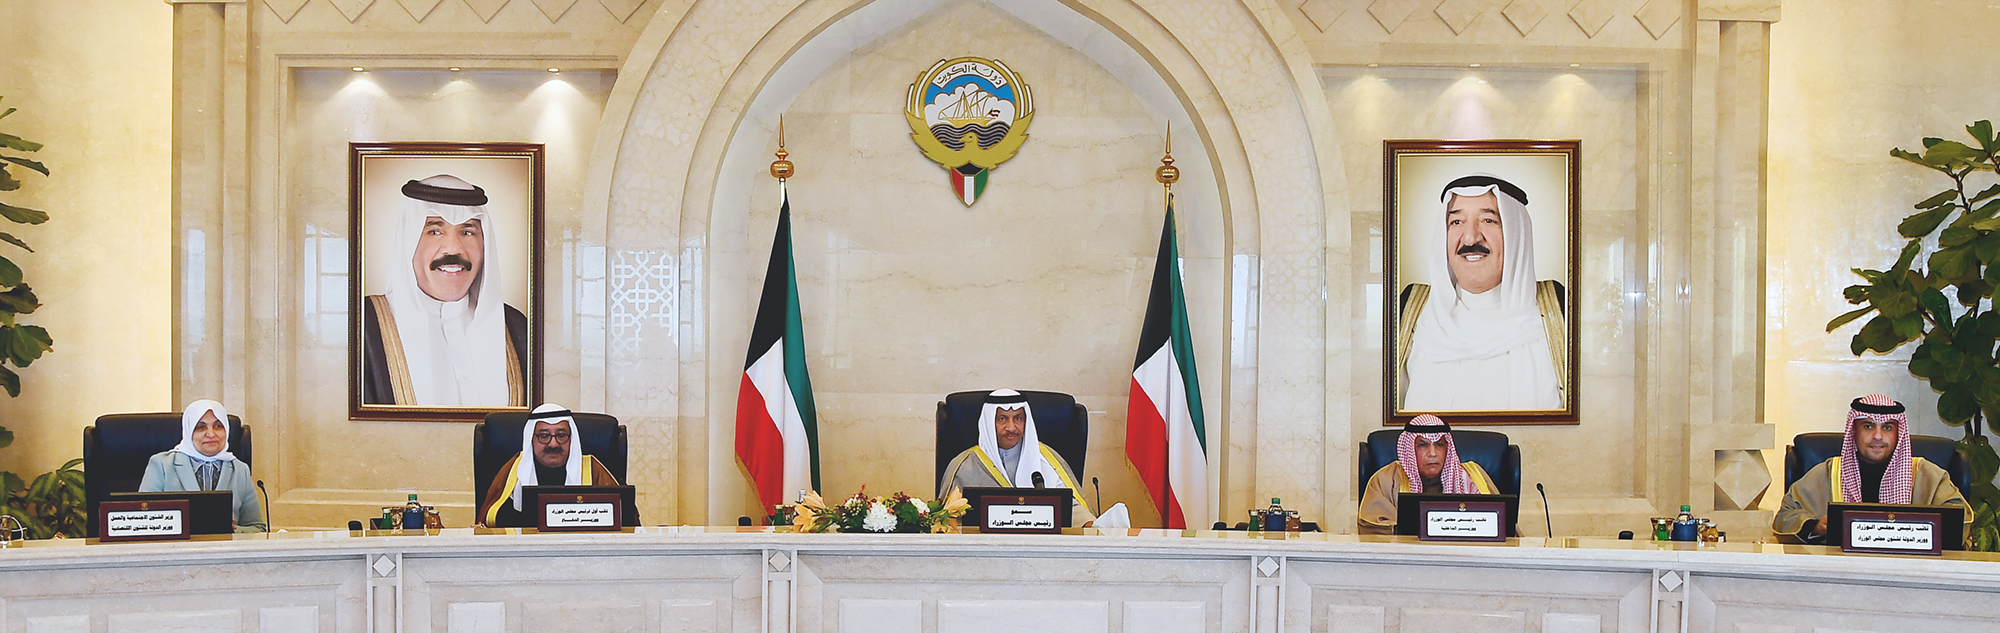 His Highness the Prime Minister Sheikh Jaber Al-Mubarak Al-Hamad Al-Sabah presides the cabinet's first session